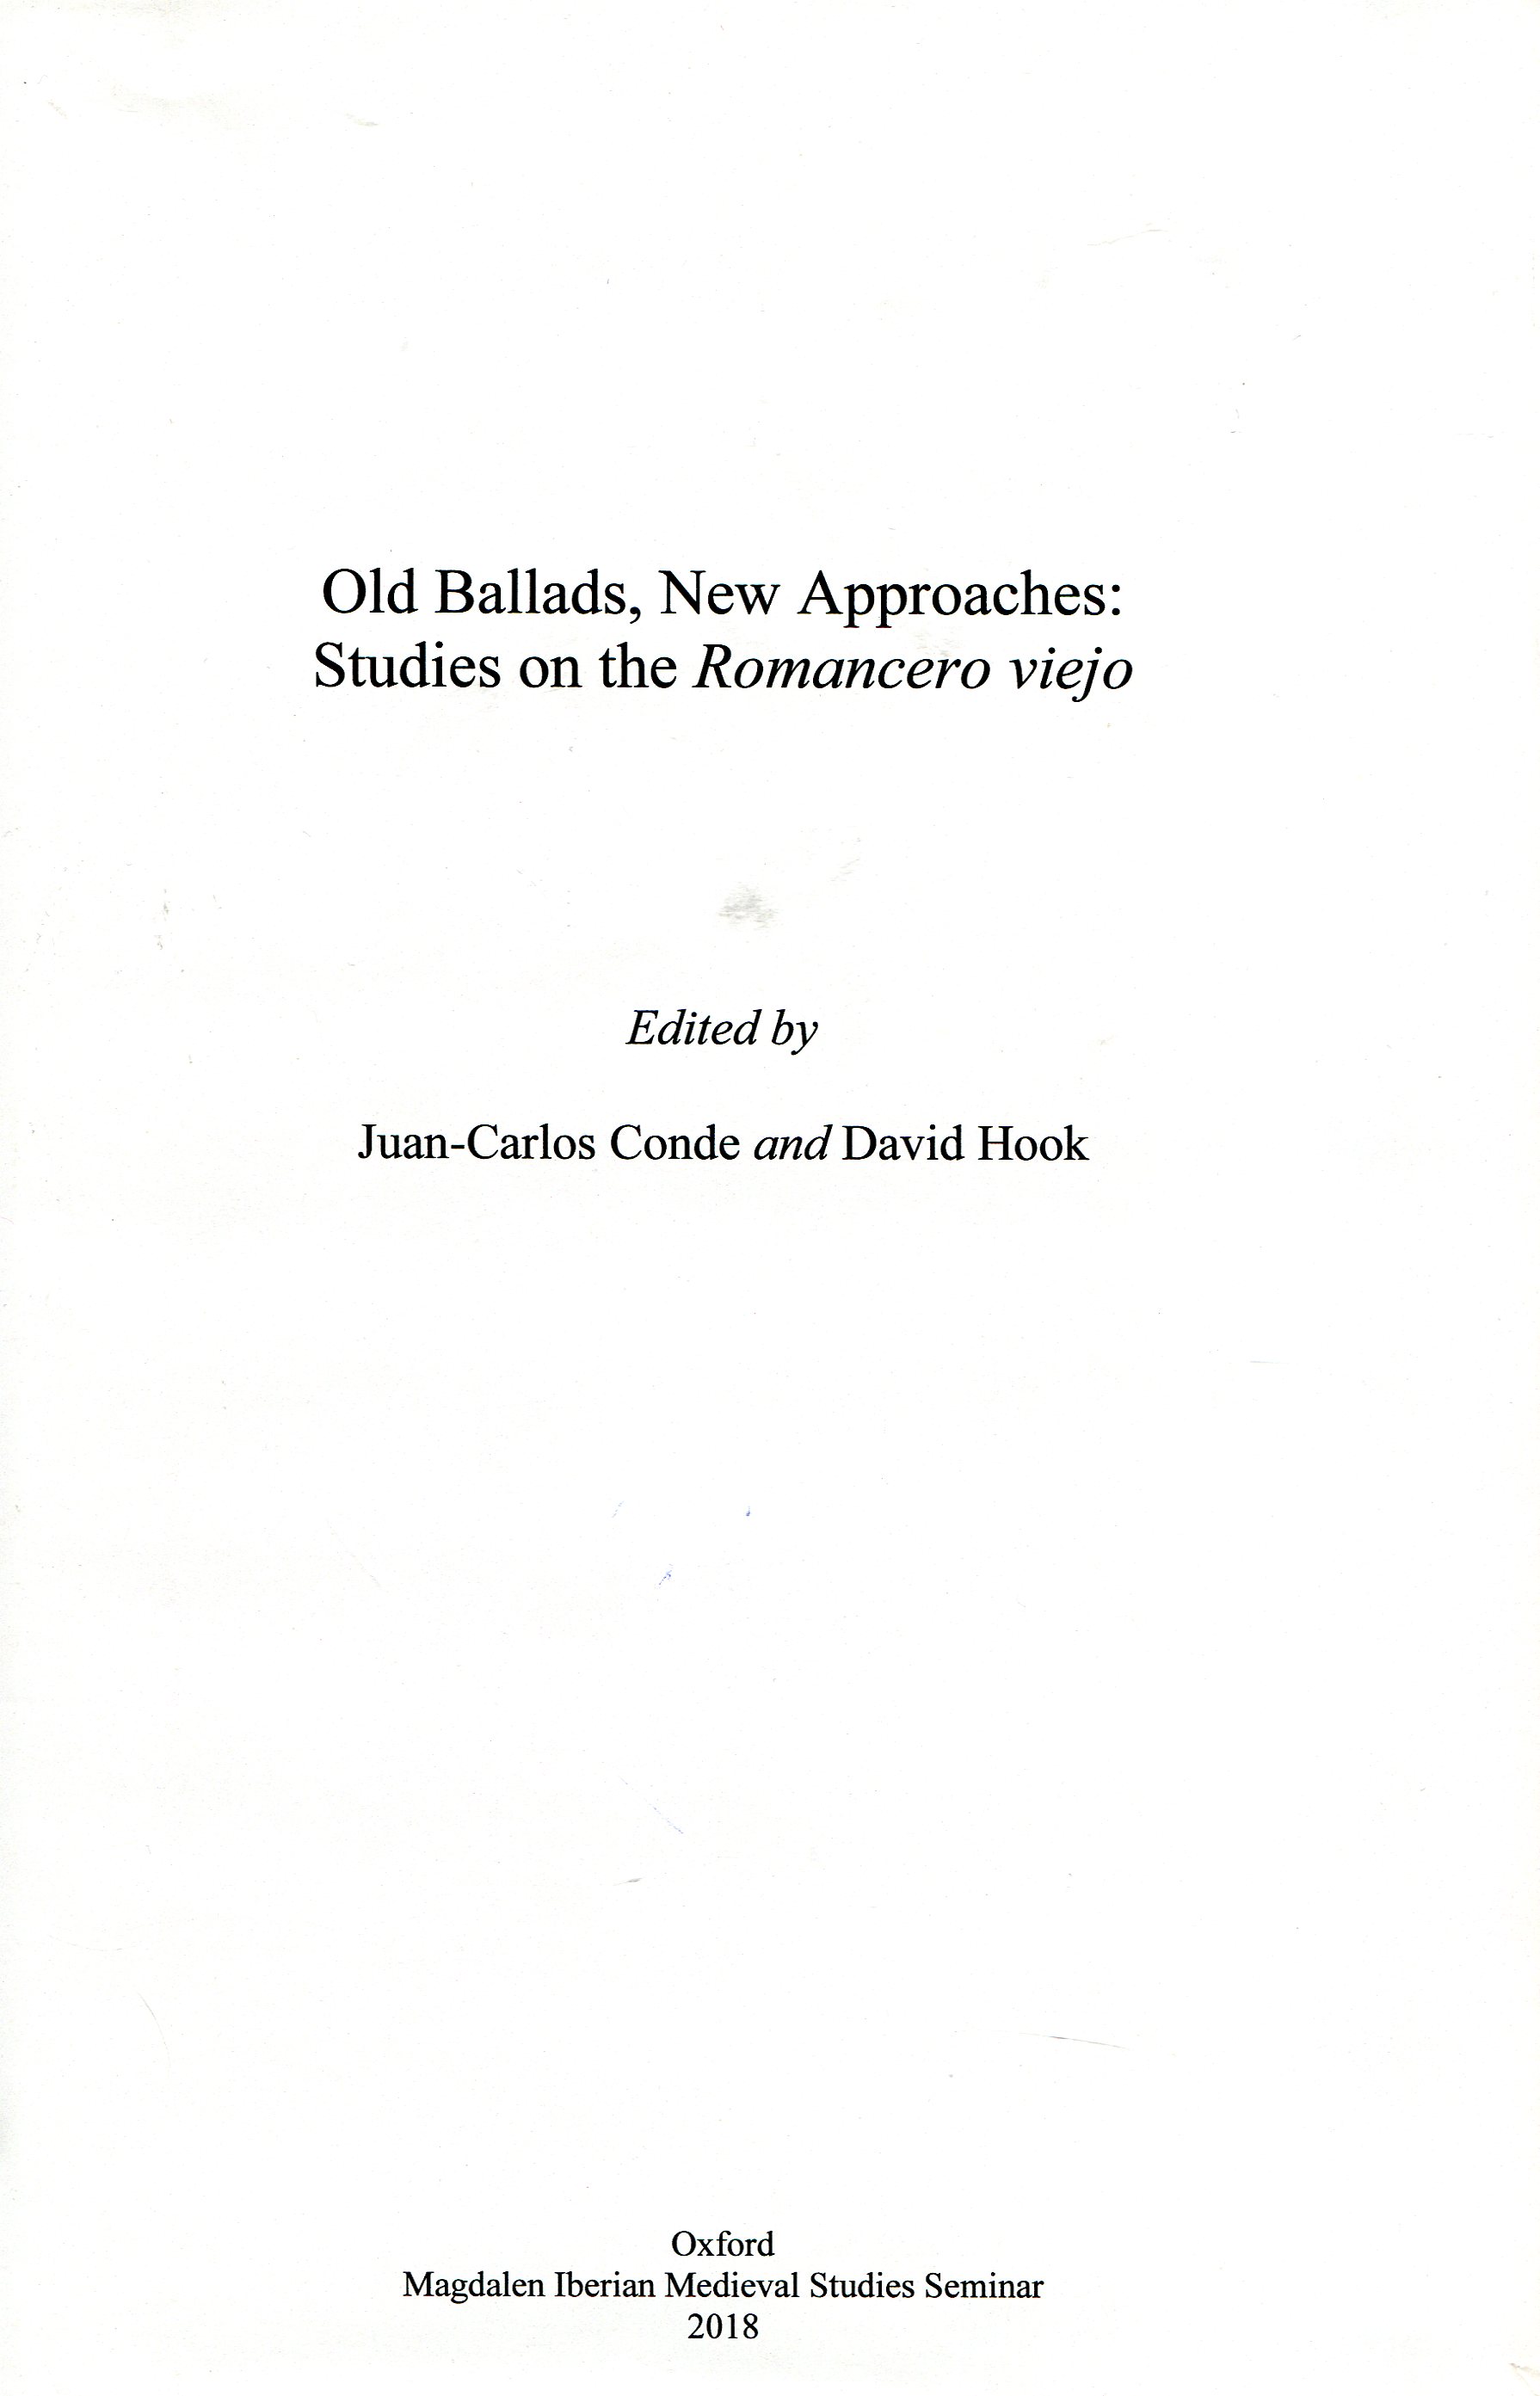 Imagen de portada del libro Old ballads, new approaches